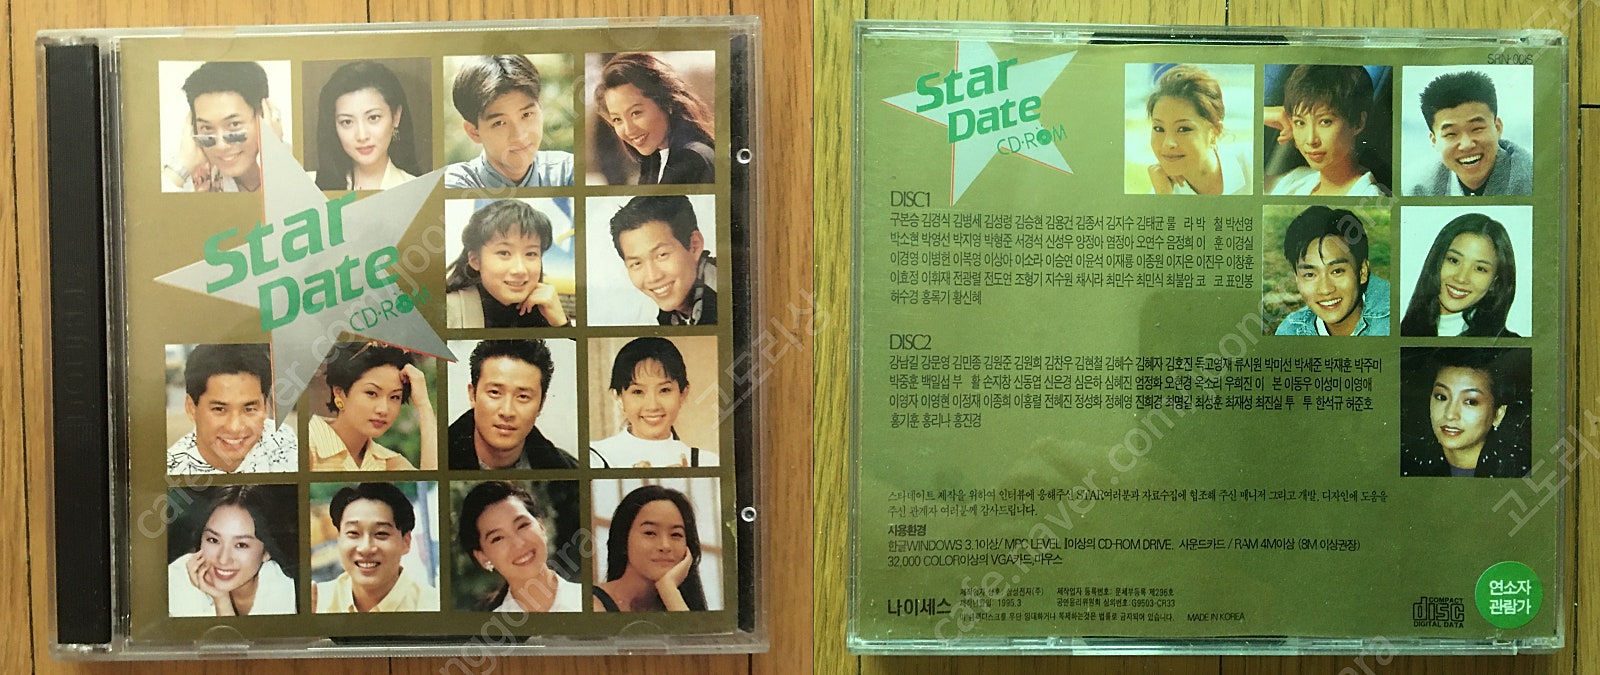 스타 데이트(Star Date) -유명연예인 102명의 스타 인터뷰(2CD롬)